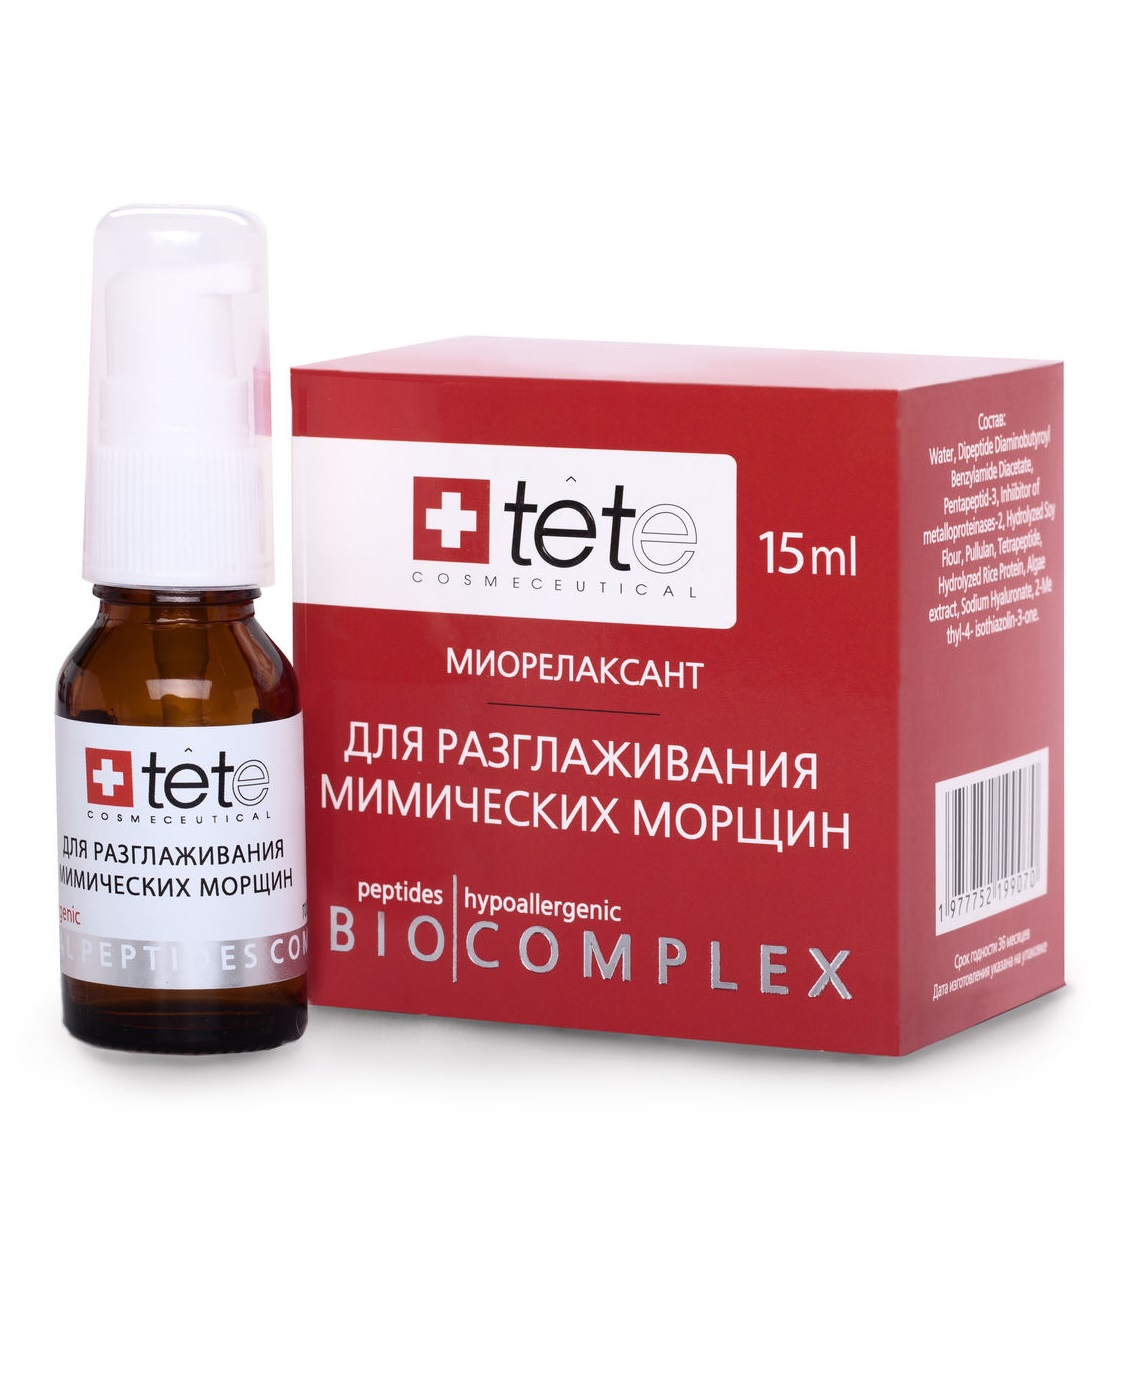 Биокомплекс-миорелаксант для разглаживания мимических морщин TETe Cosmeceutical